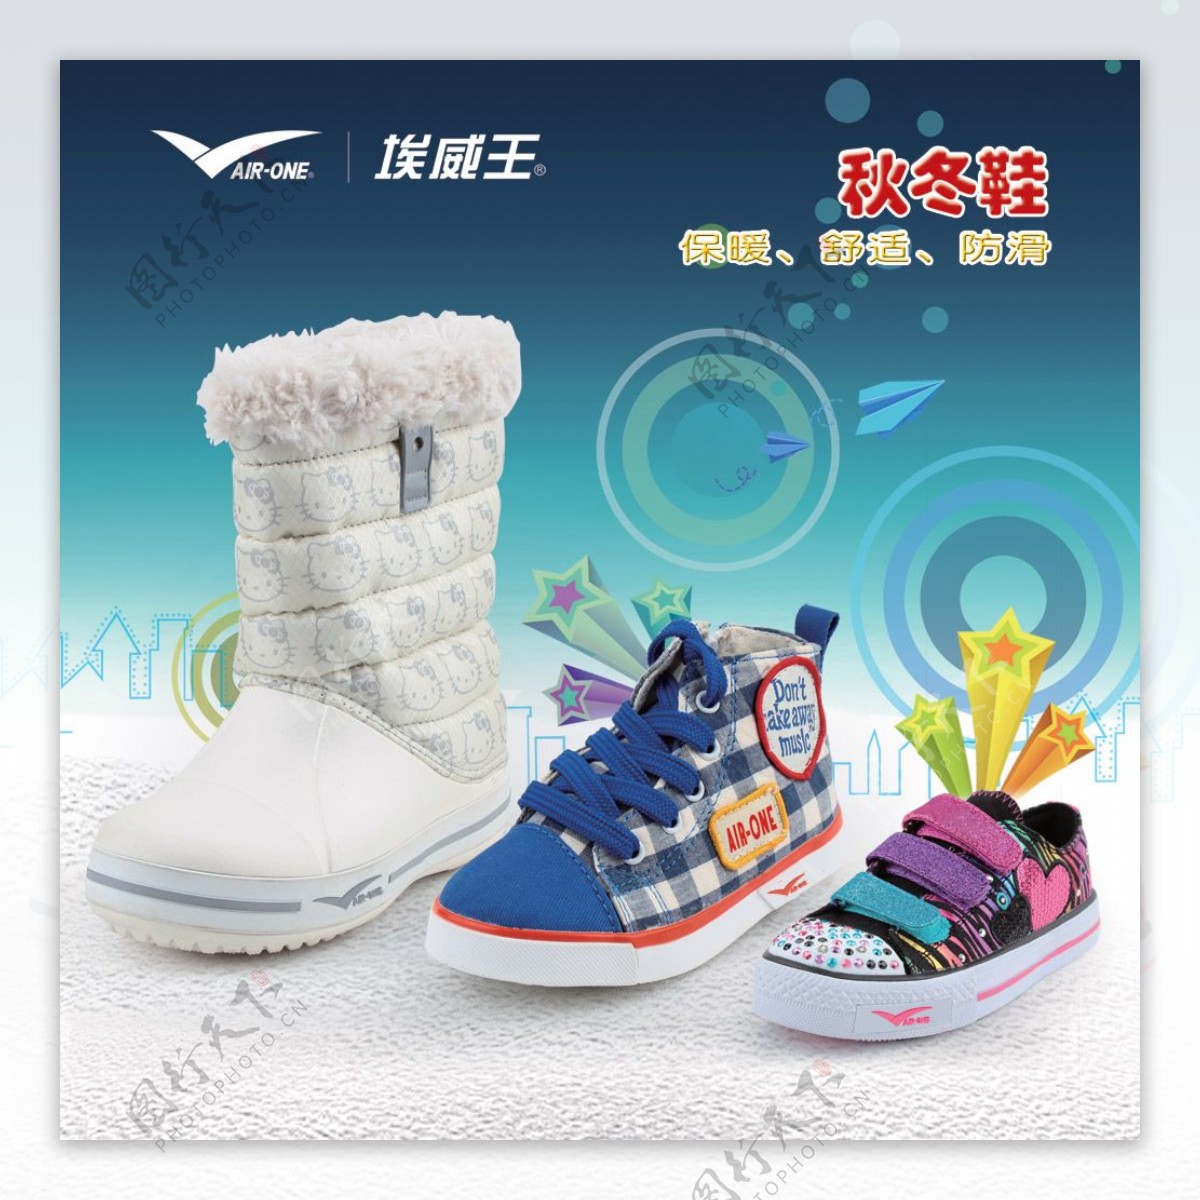 埃威王秋冬鞋广告